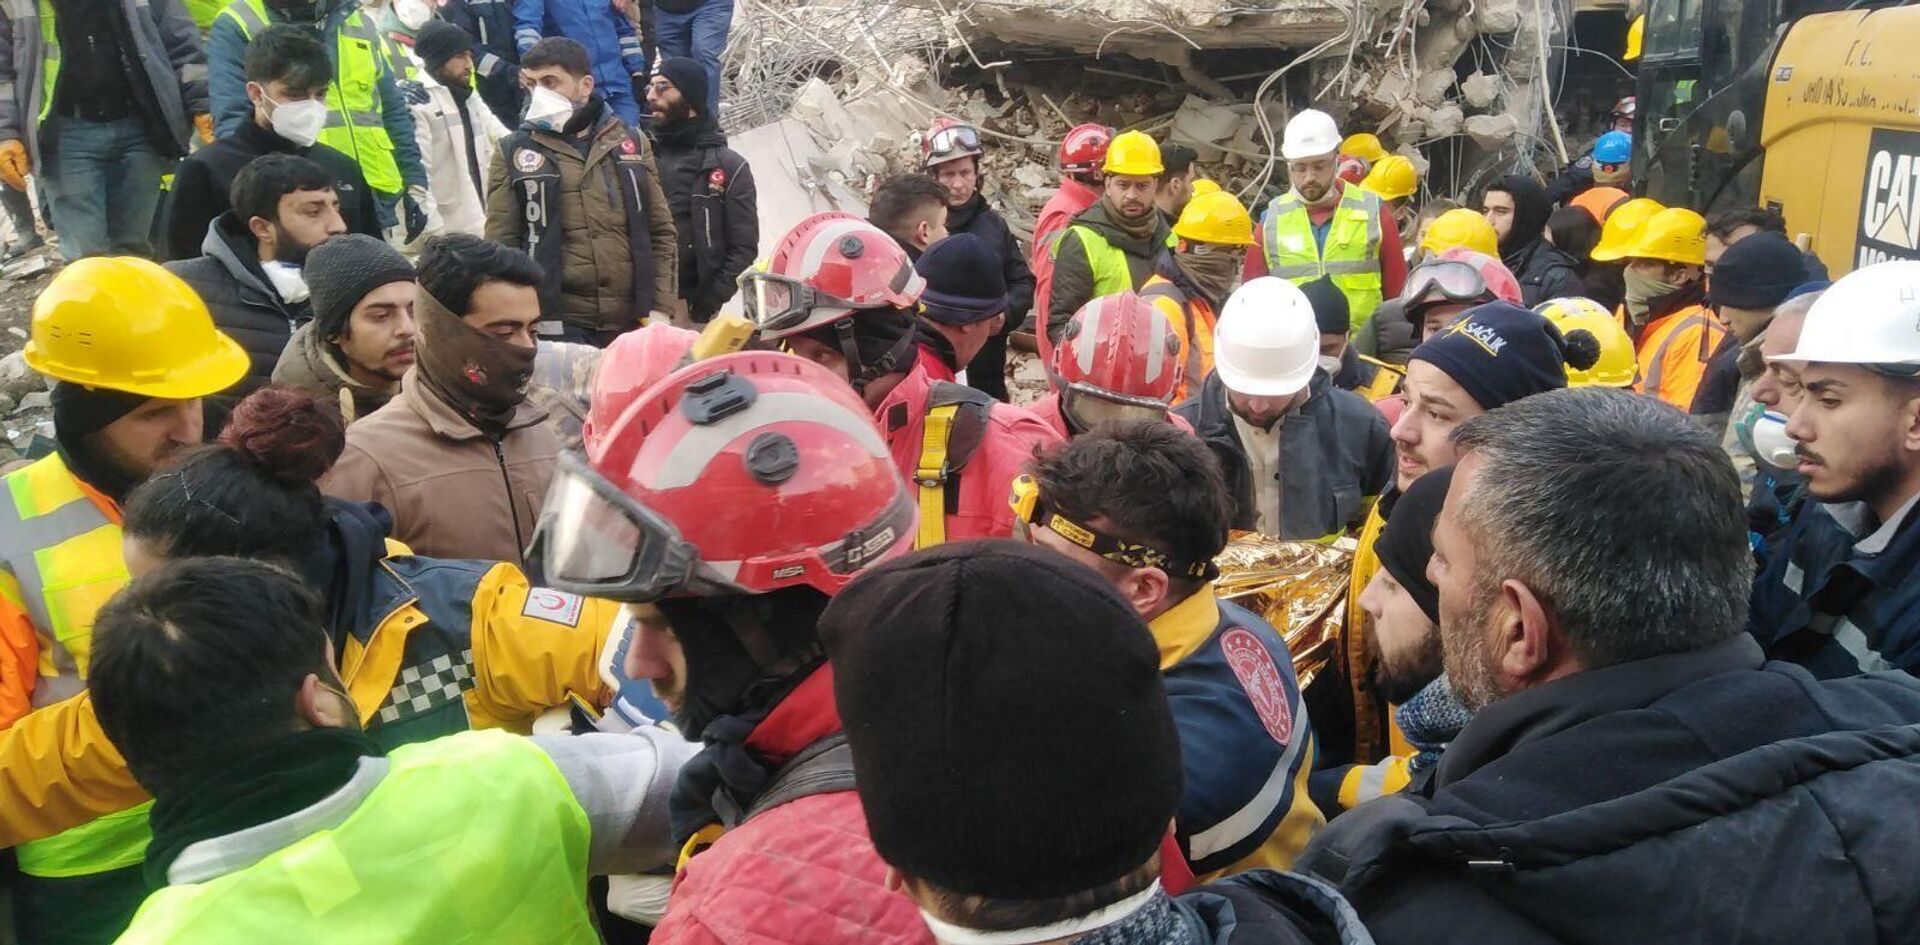 Srpski vatrogasci-spasioci spasili su sedamnaestogodišnju devojku koja je 108 sati bila pod ruševinama sedmospratne zgrade u Turskoj. - Sputnik Srbija, 1920, 10.02.2023